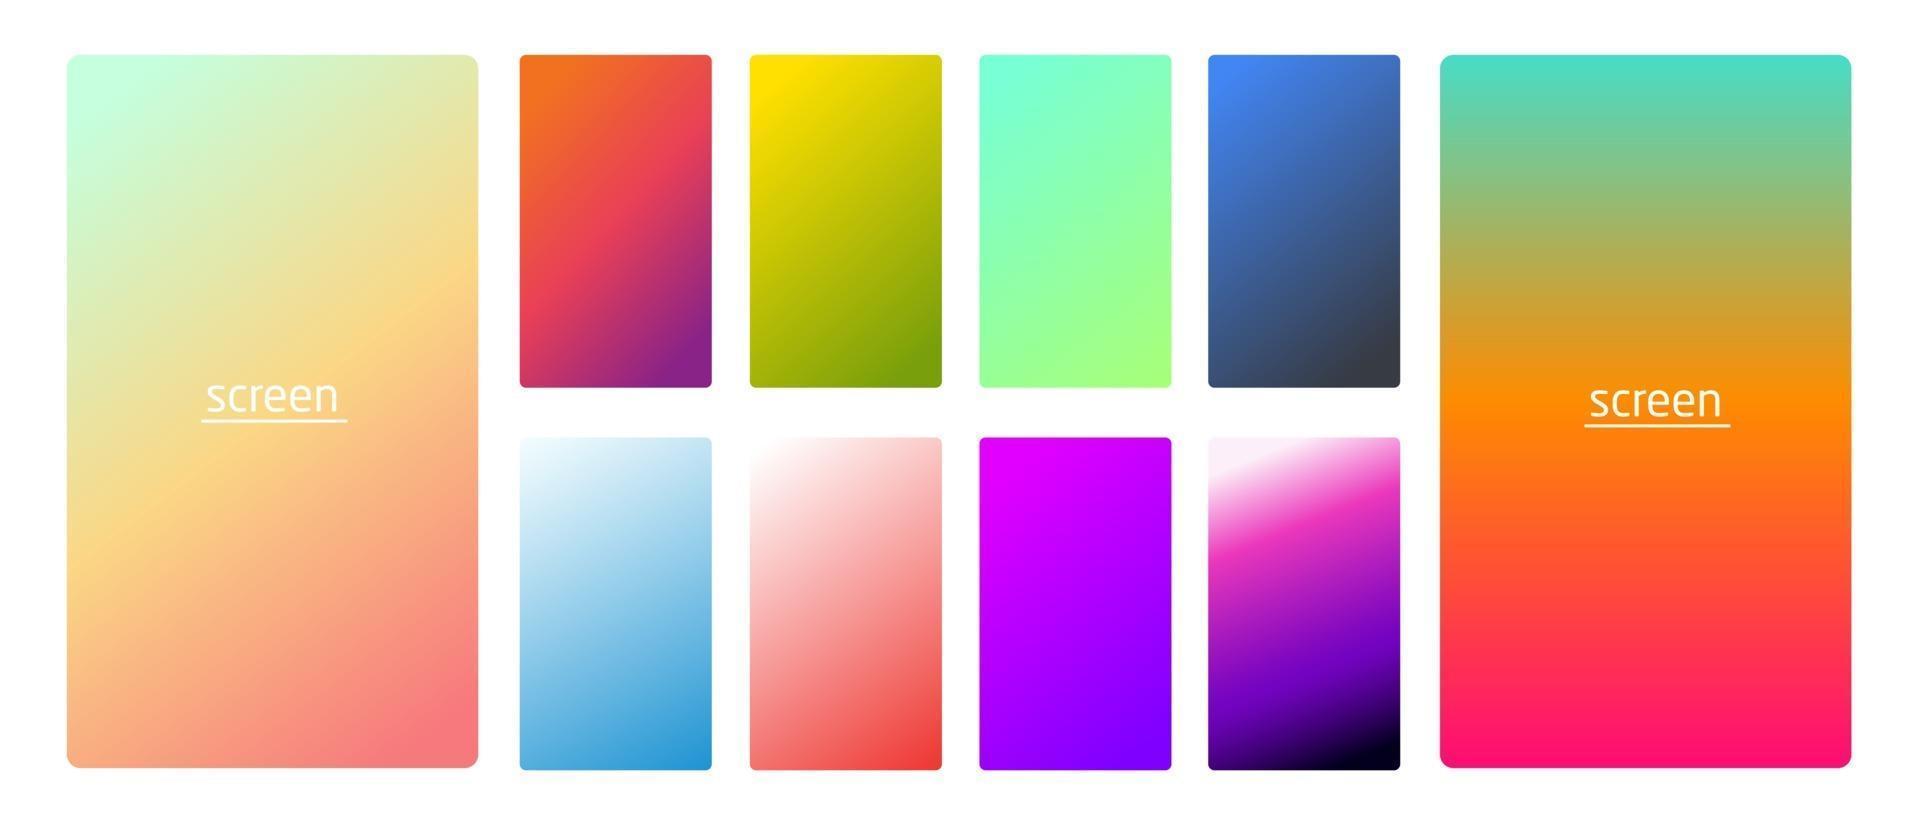 levendige en zachte pastel gradiënt vloeiende kleur achtergrond ingesteld voor apparaten pc en moderne smartphonescherm zachte pastelkleuren achtergronden vector ux en ui ontwerp illustratie